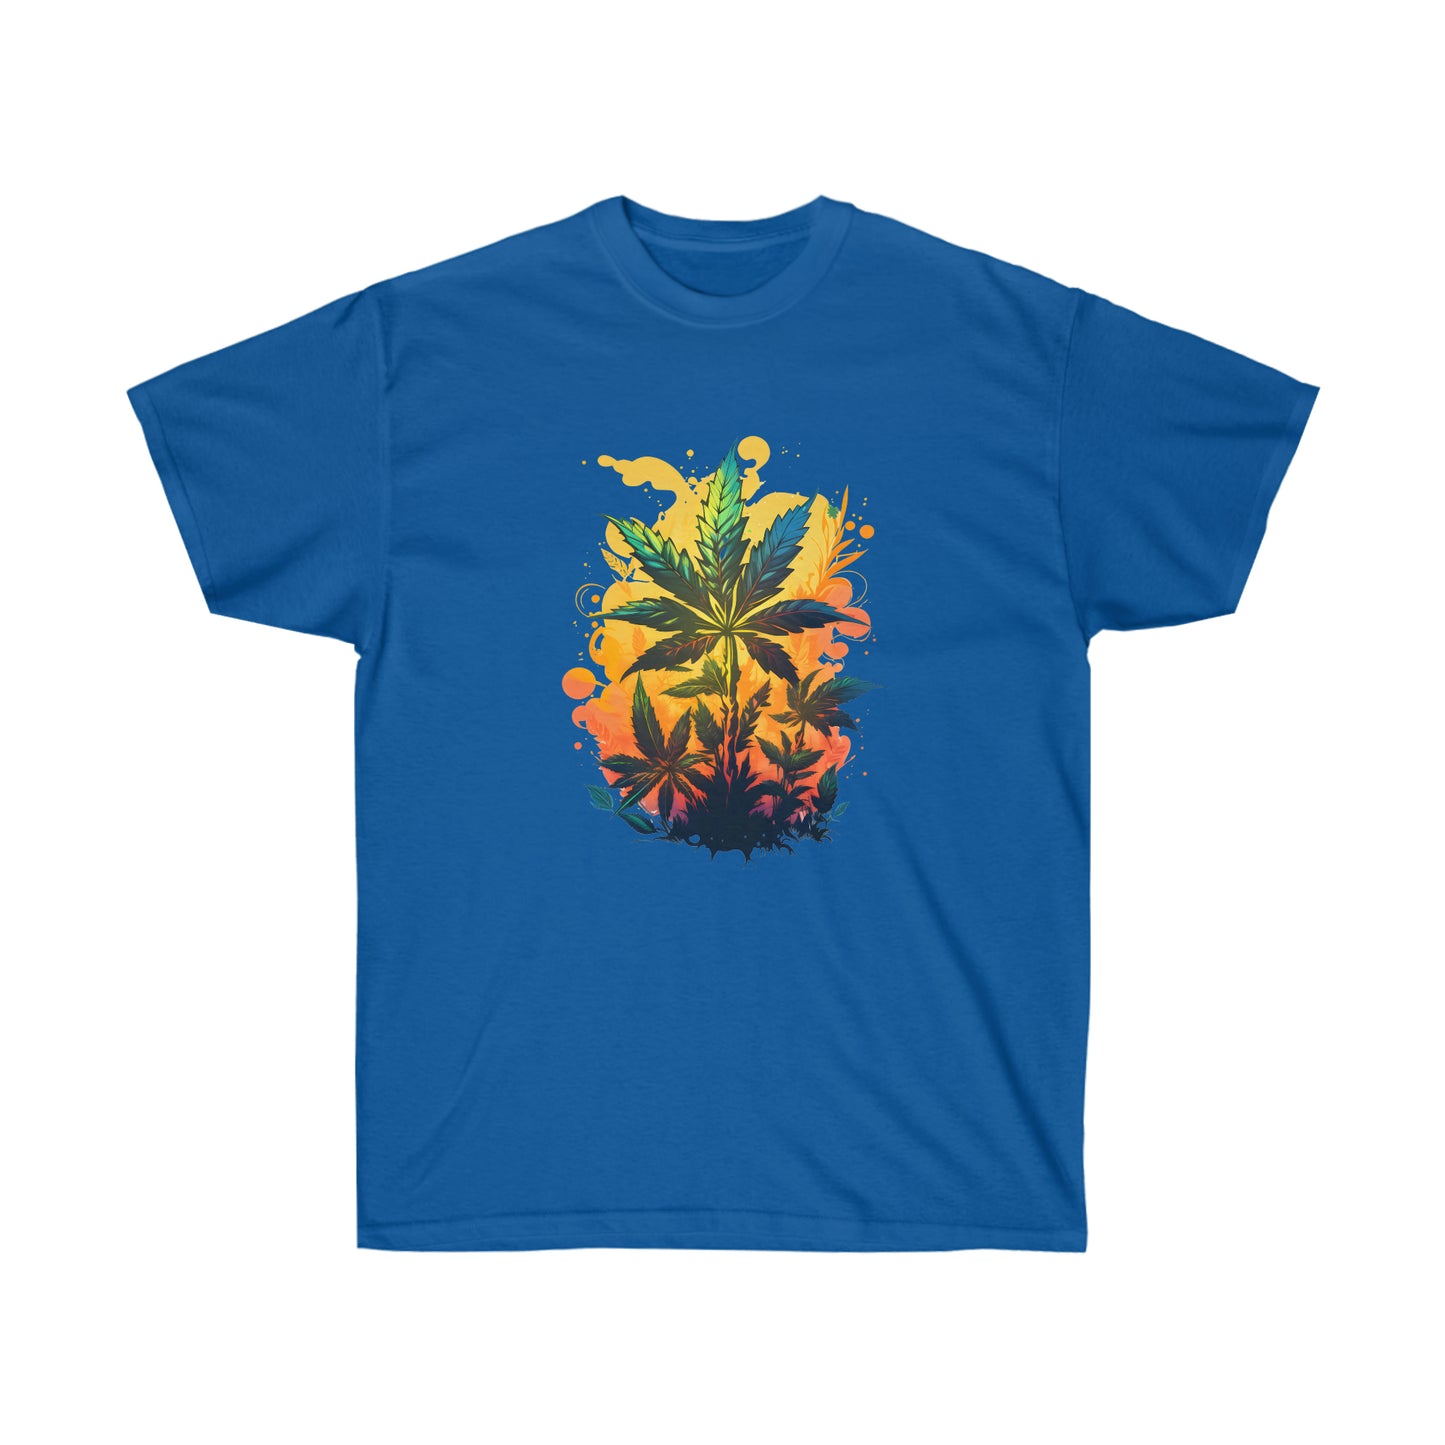 A royal blue, warm paradise cannabis t-shirt